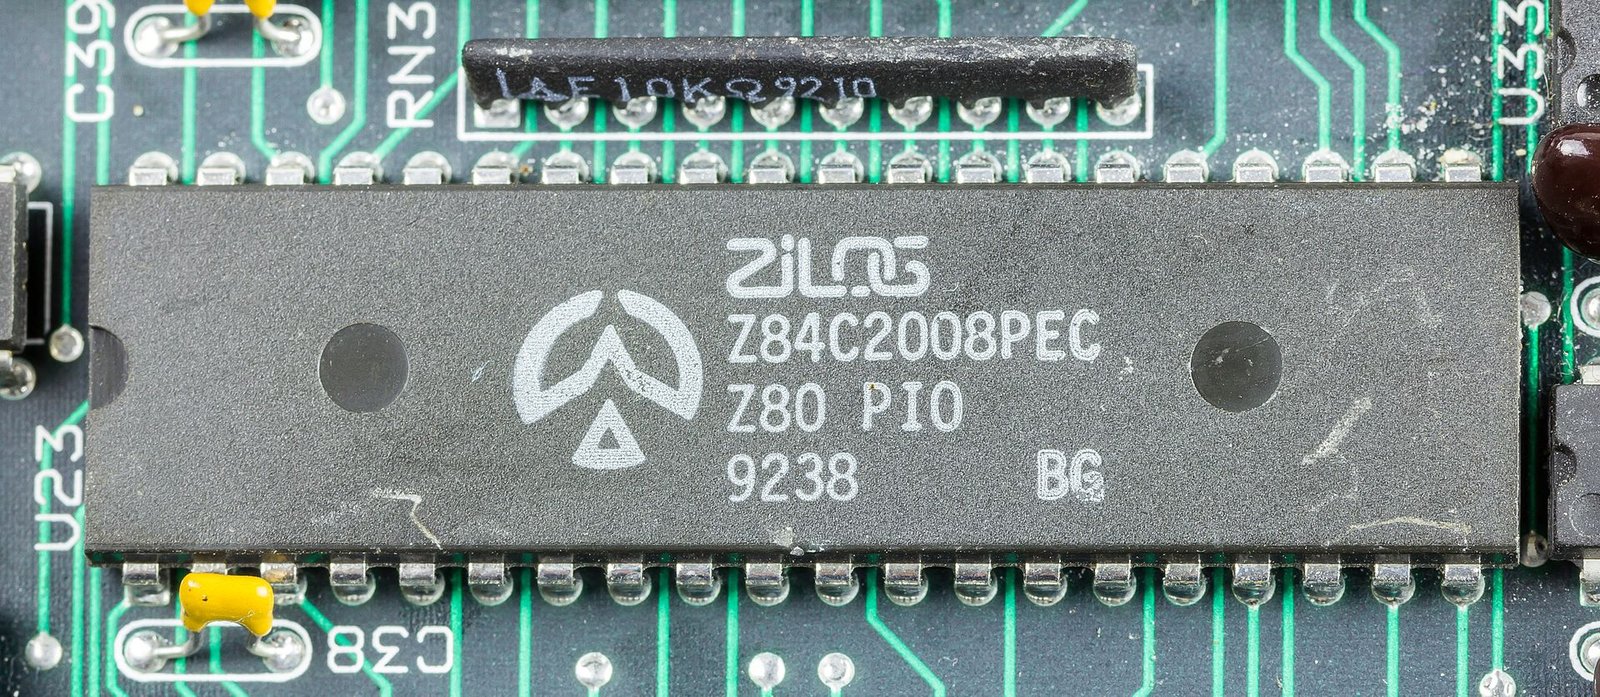 Z84C200